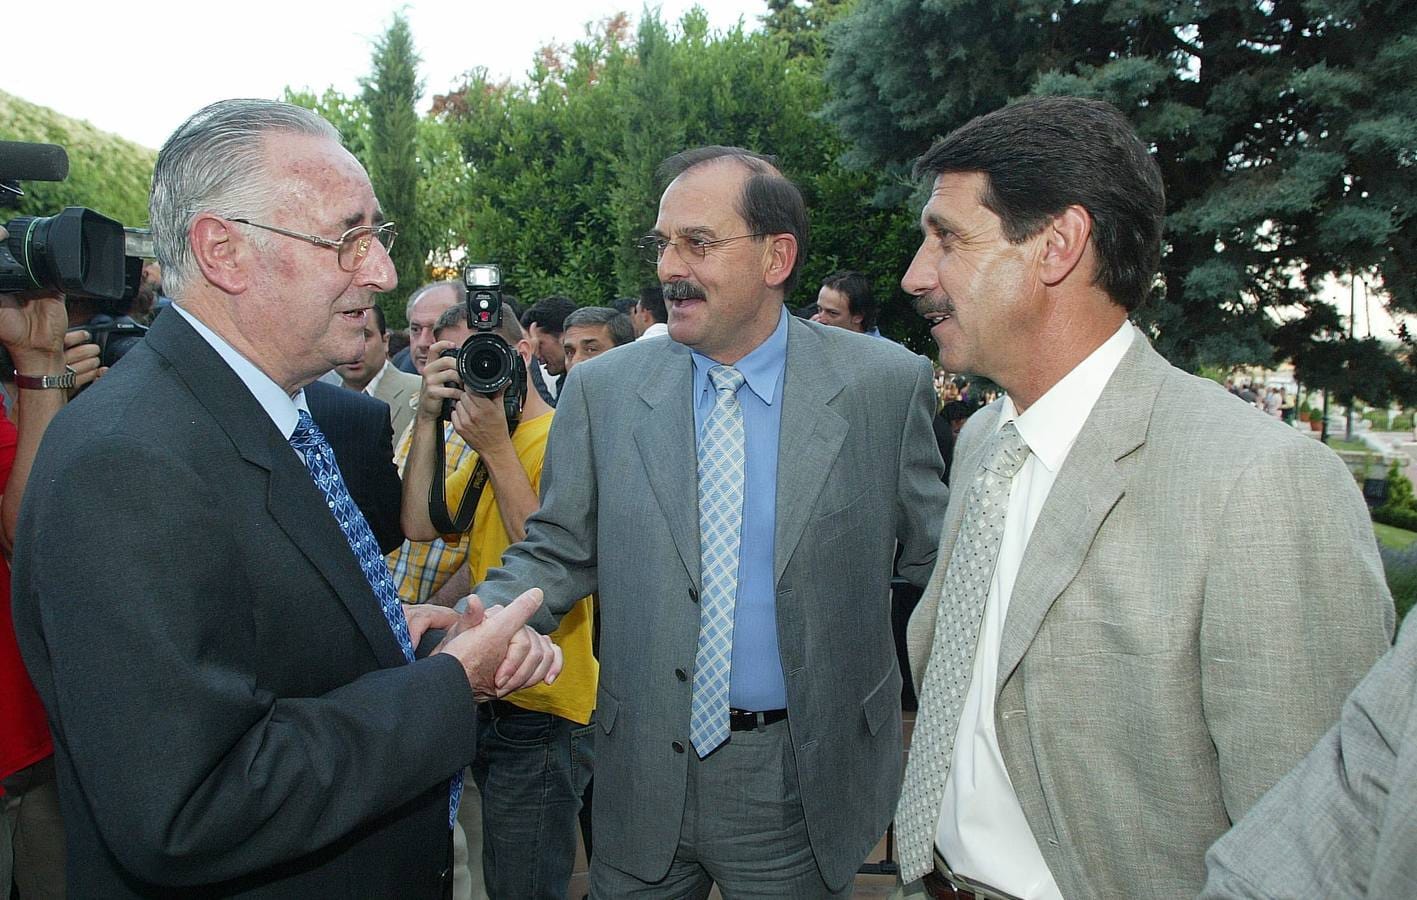 Vicente Cantatore, Kresic y Pepe Moré durante la fiesta del 75 aniversario del Real Valladolid que se celebró en el Casino de Boecillo.